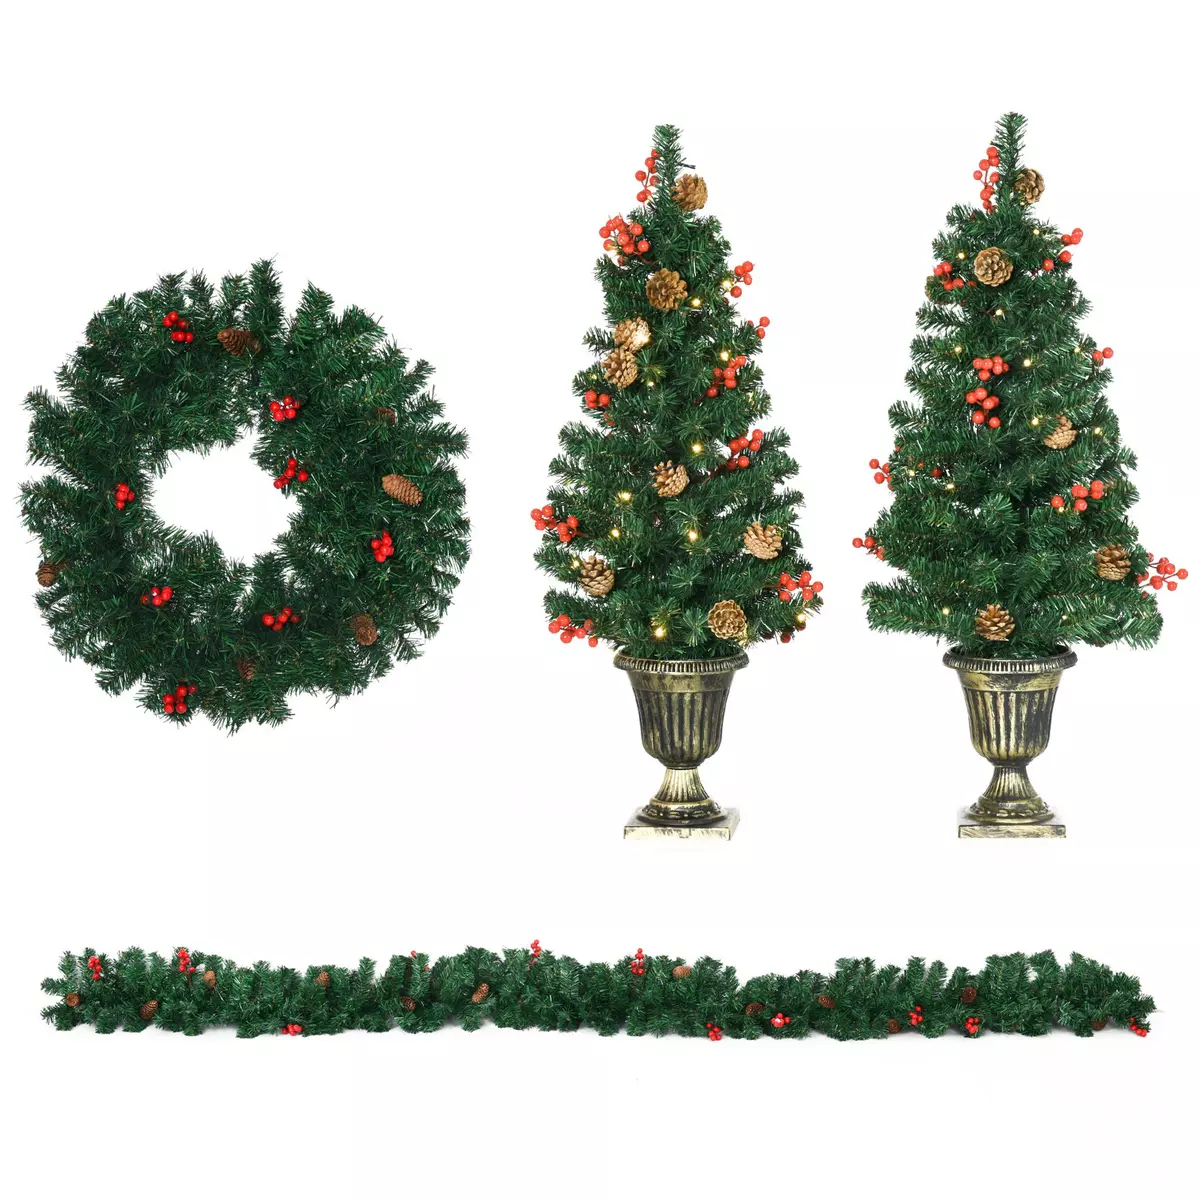 HOMCOM Lot de 4 pièces - décorations de Noël lumineuses LED - couronne, guirlande, 2 sapins avec pots et accessoires - vert